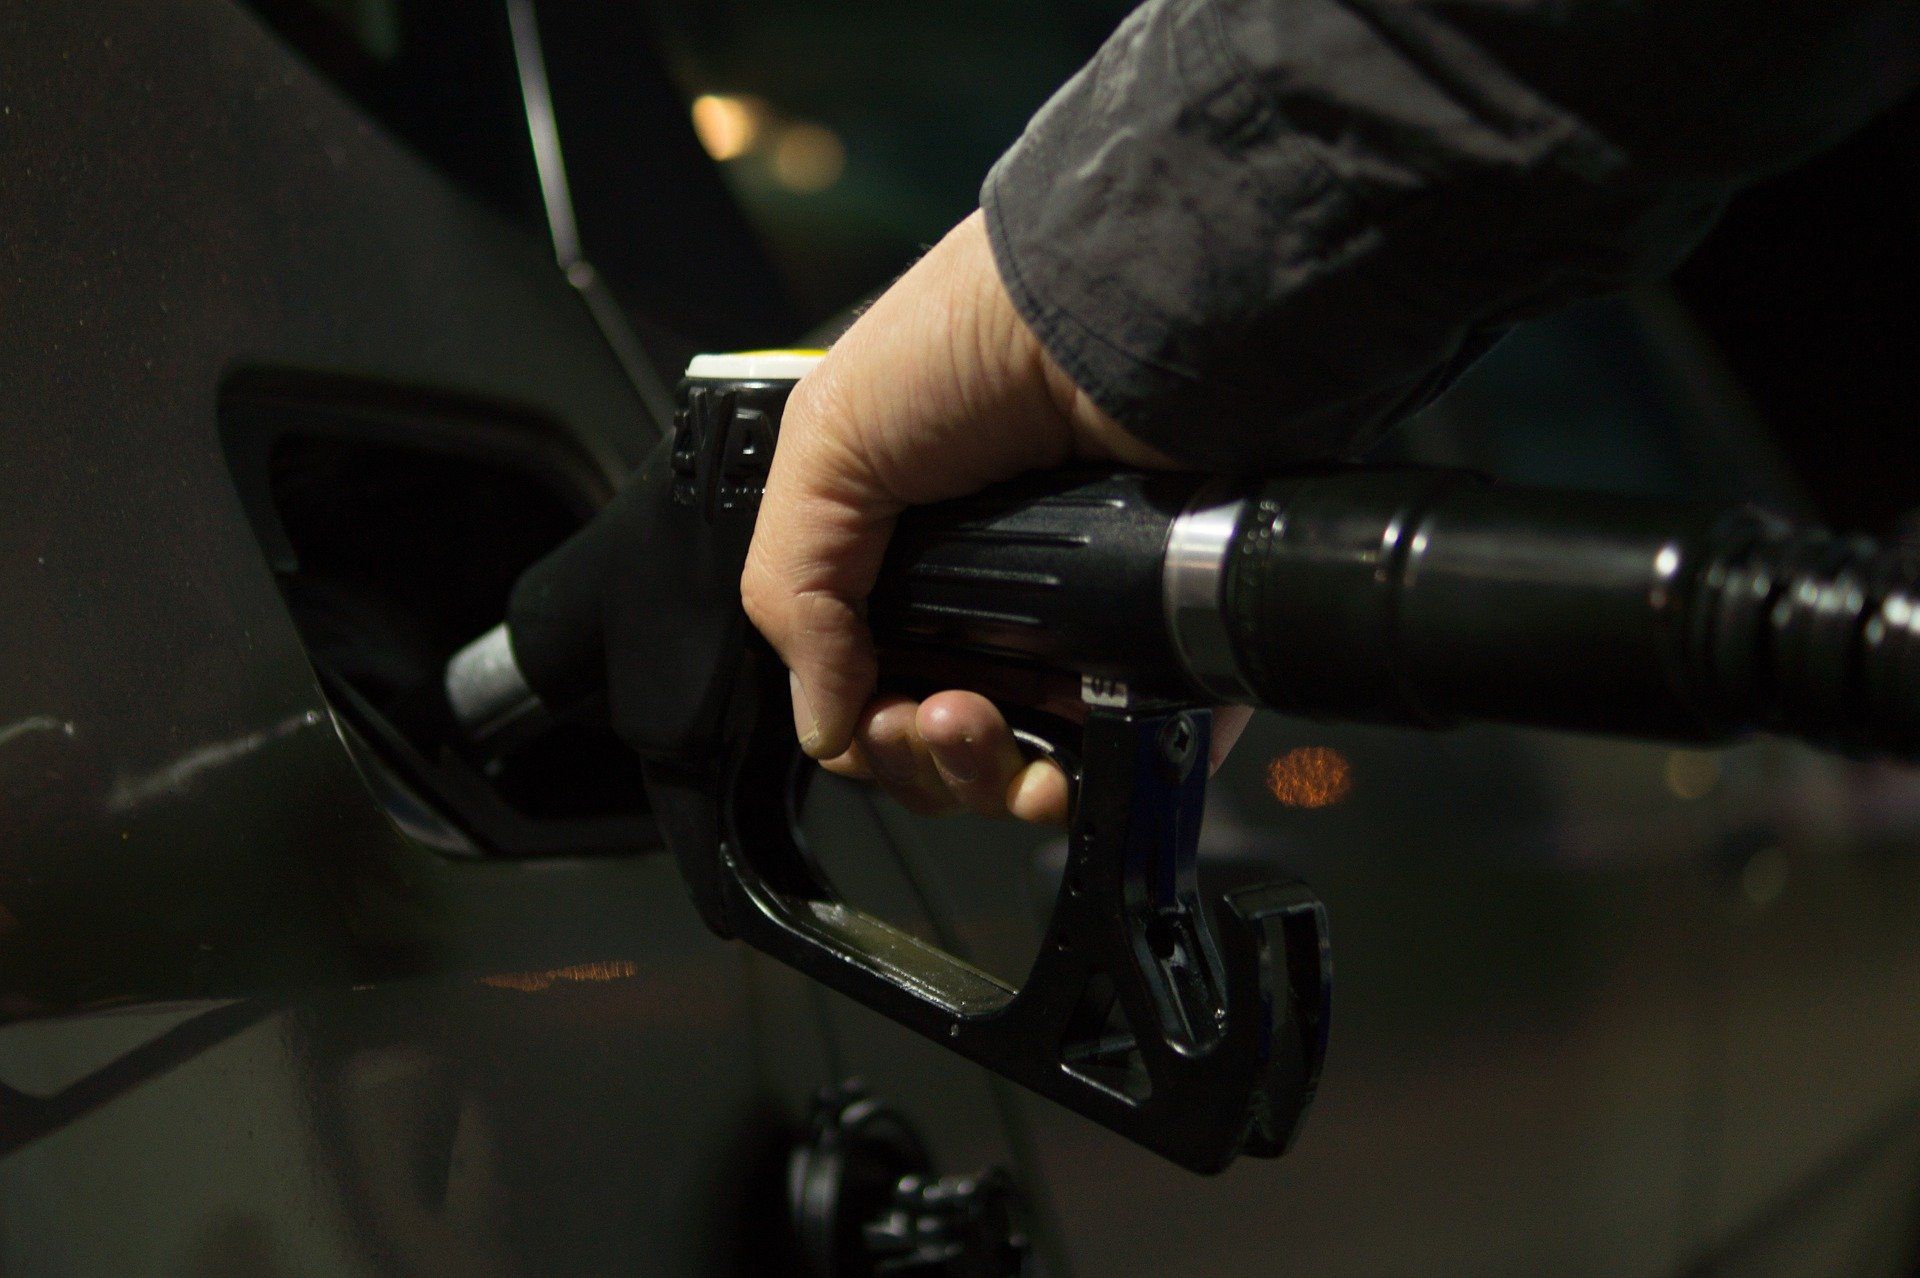 Fuel price July 19, 2022: Petrol Rs 105.31, diesel Rs 94.27 in Mumbai